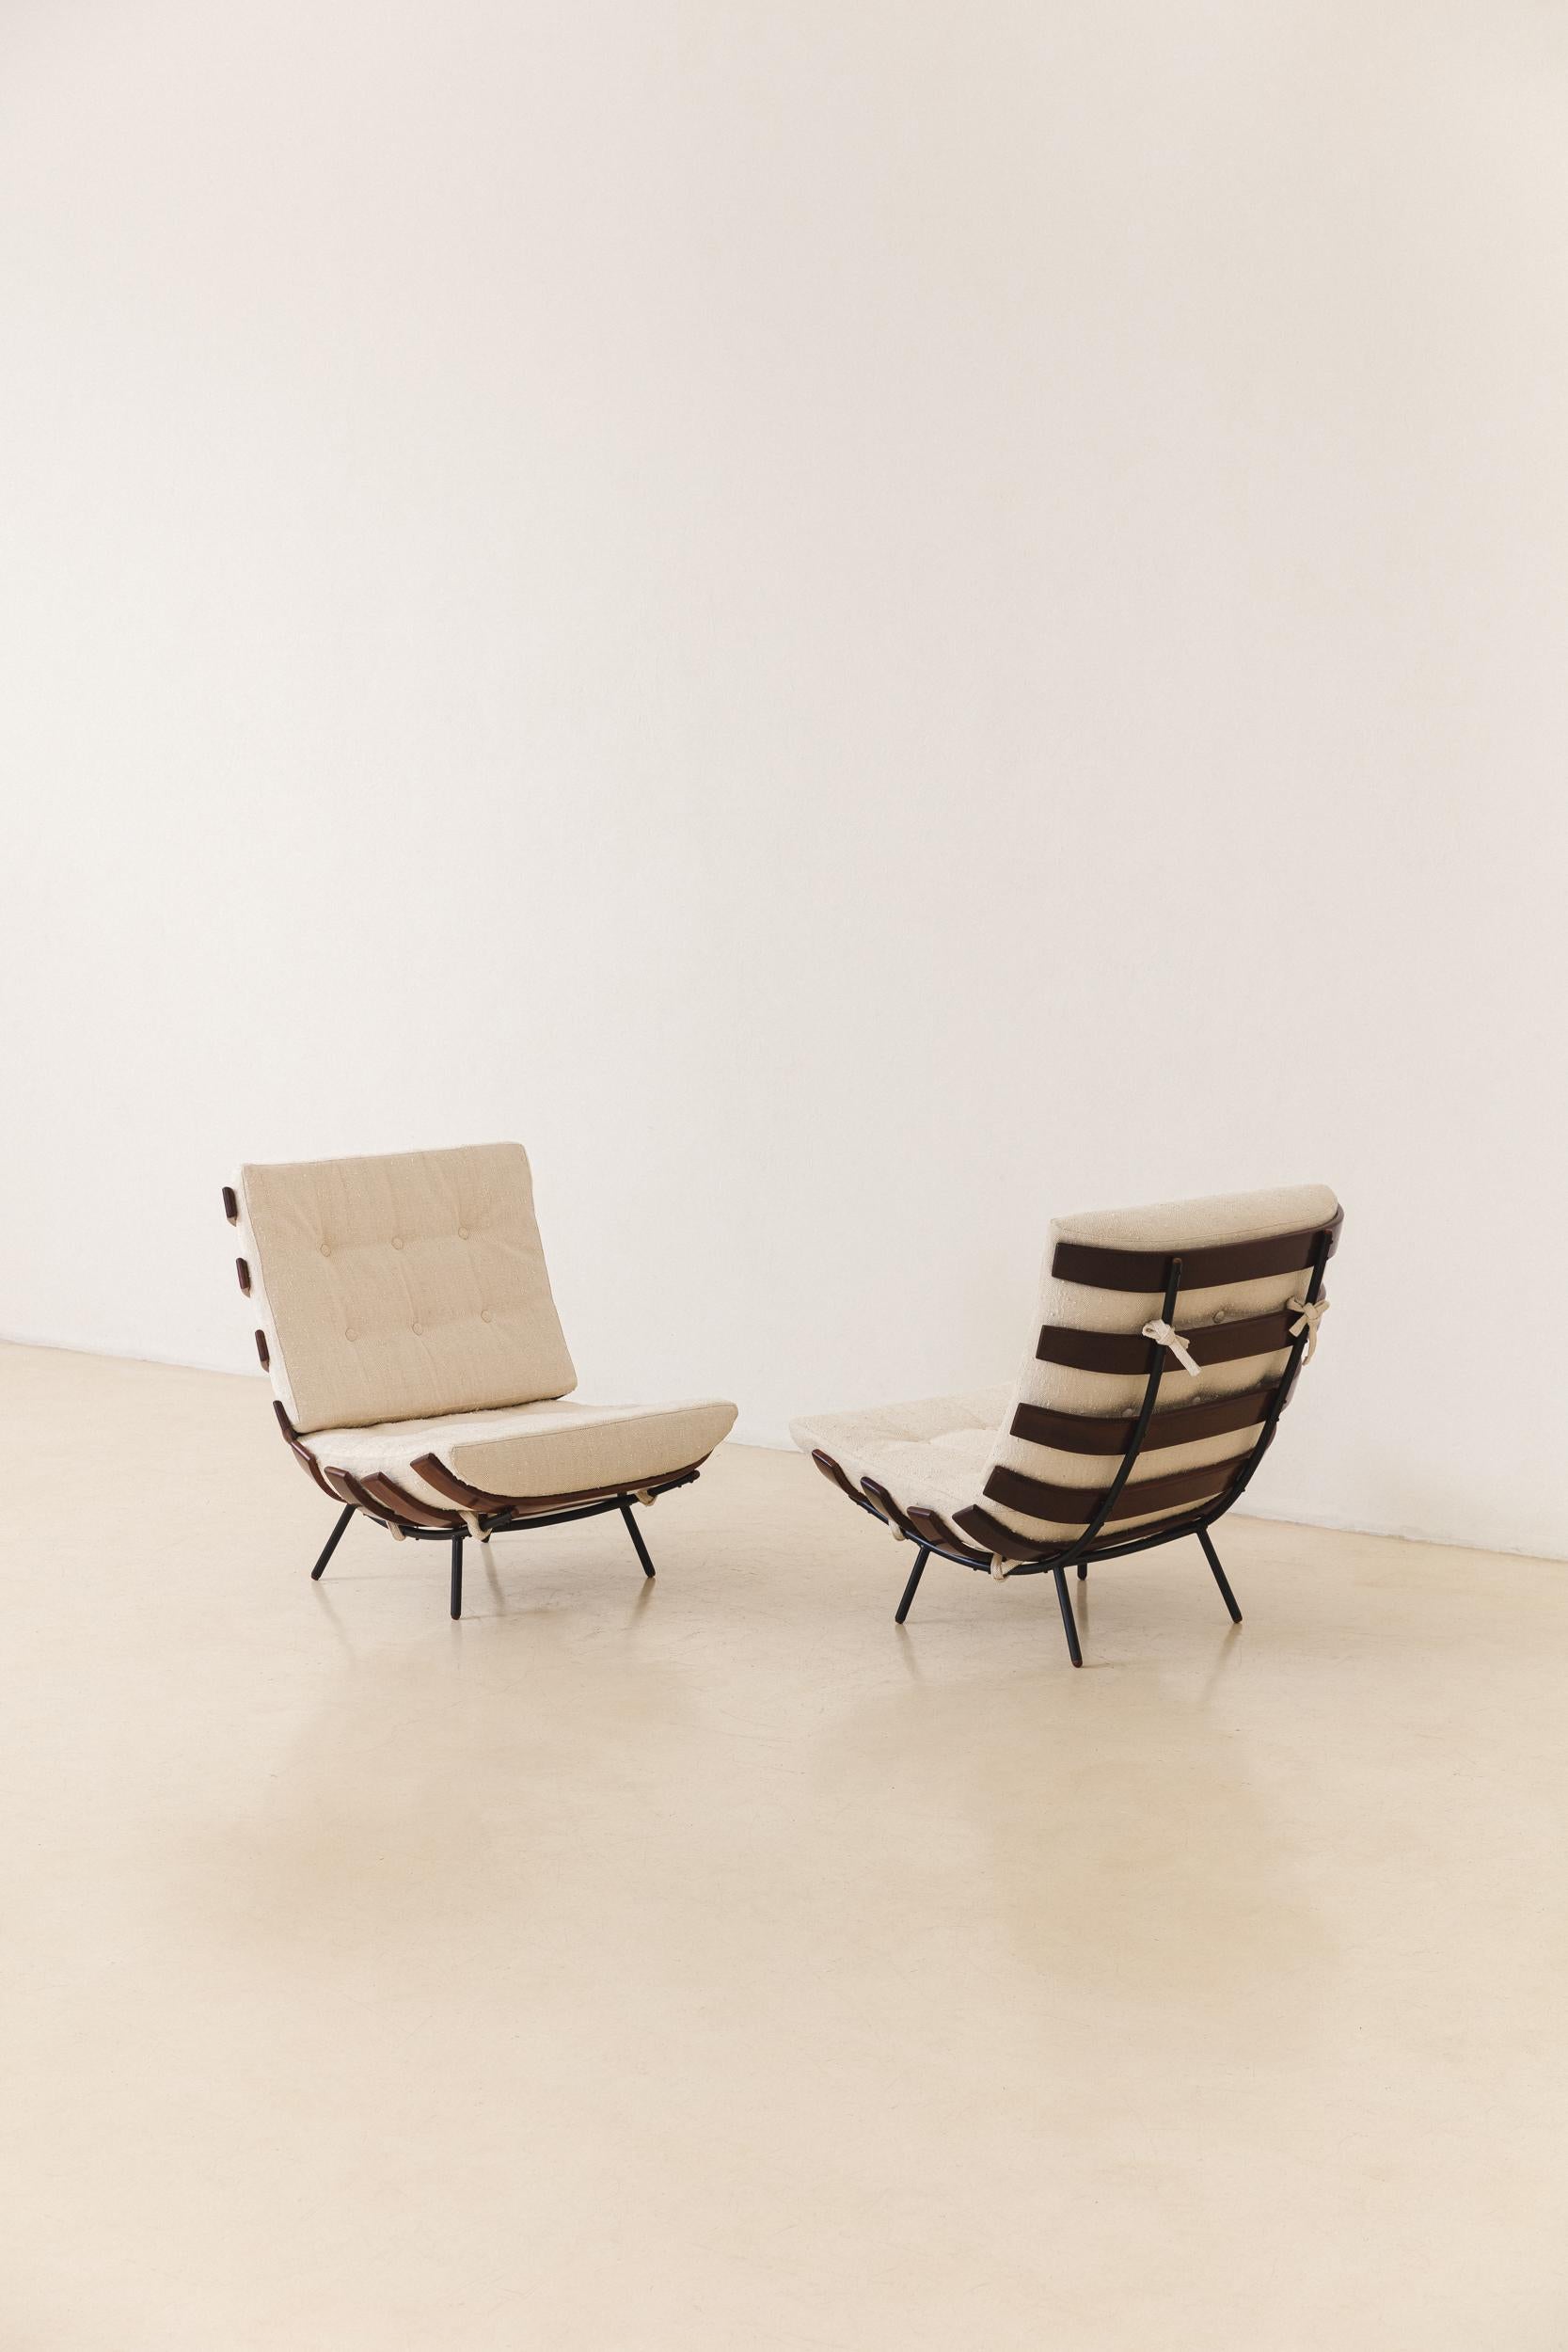 Le fauteuil Costela est une pièce emblématique de la modernité brésilienne du milieu du siècle. Il a été conçu par Martin Eisler (1913 - 1977) en 1953 et fabriqué par les sociétés Móveis Artesanal et Forma S.A. Móveis e Objetos de Arte, où il a été